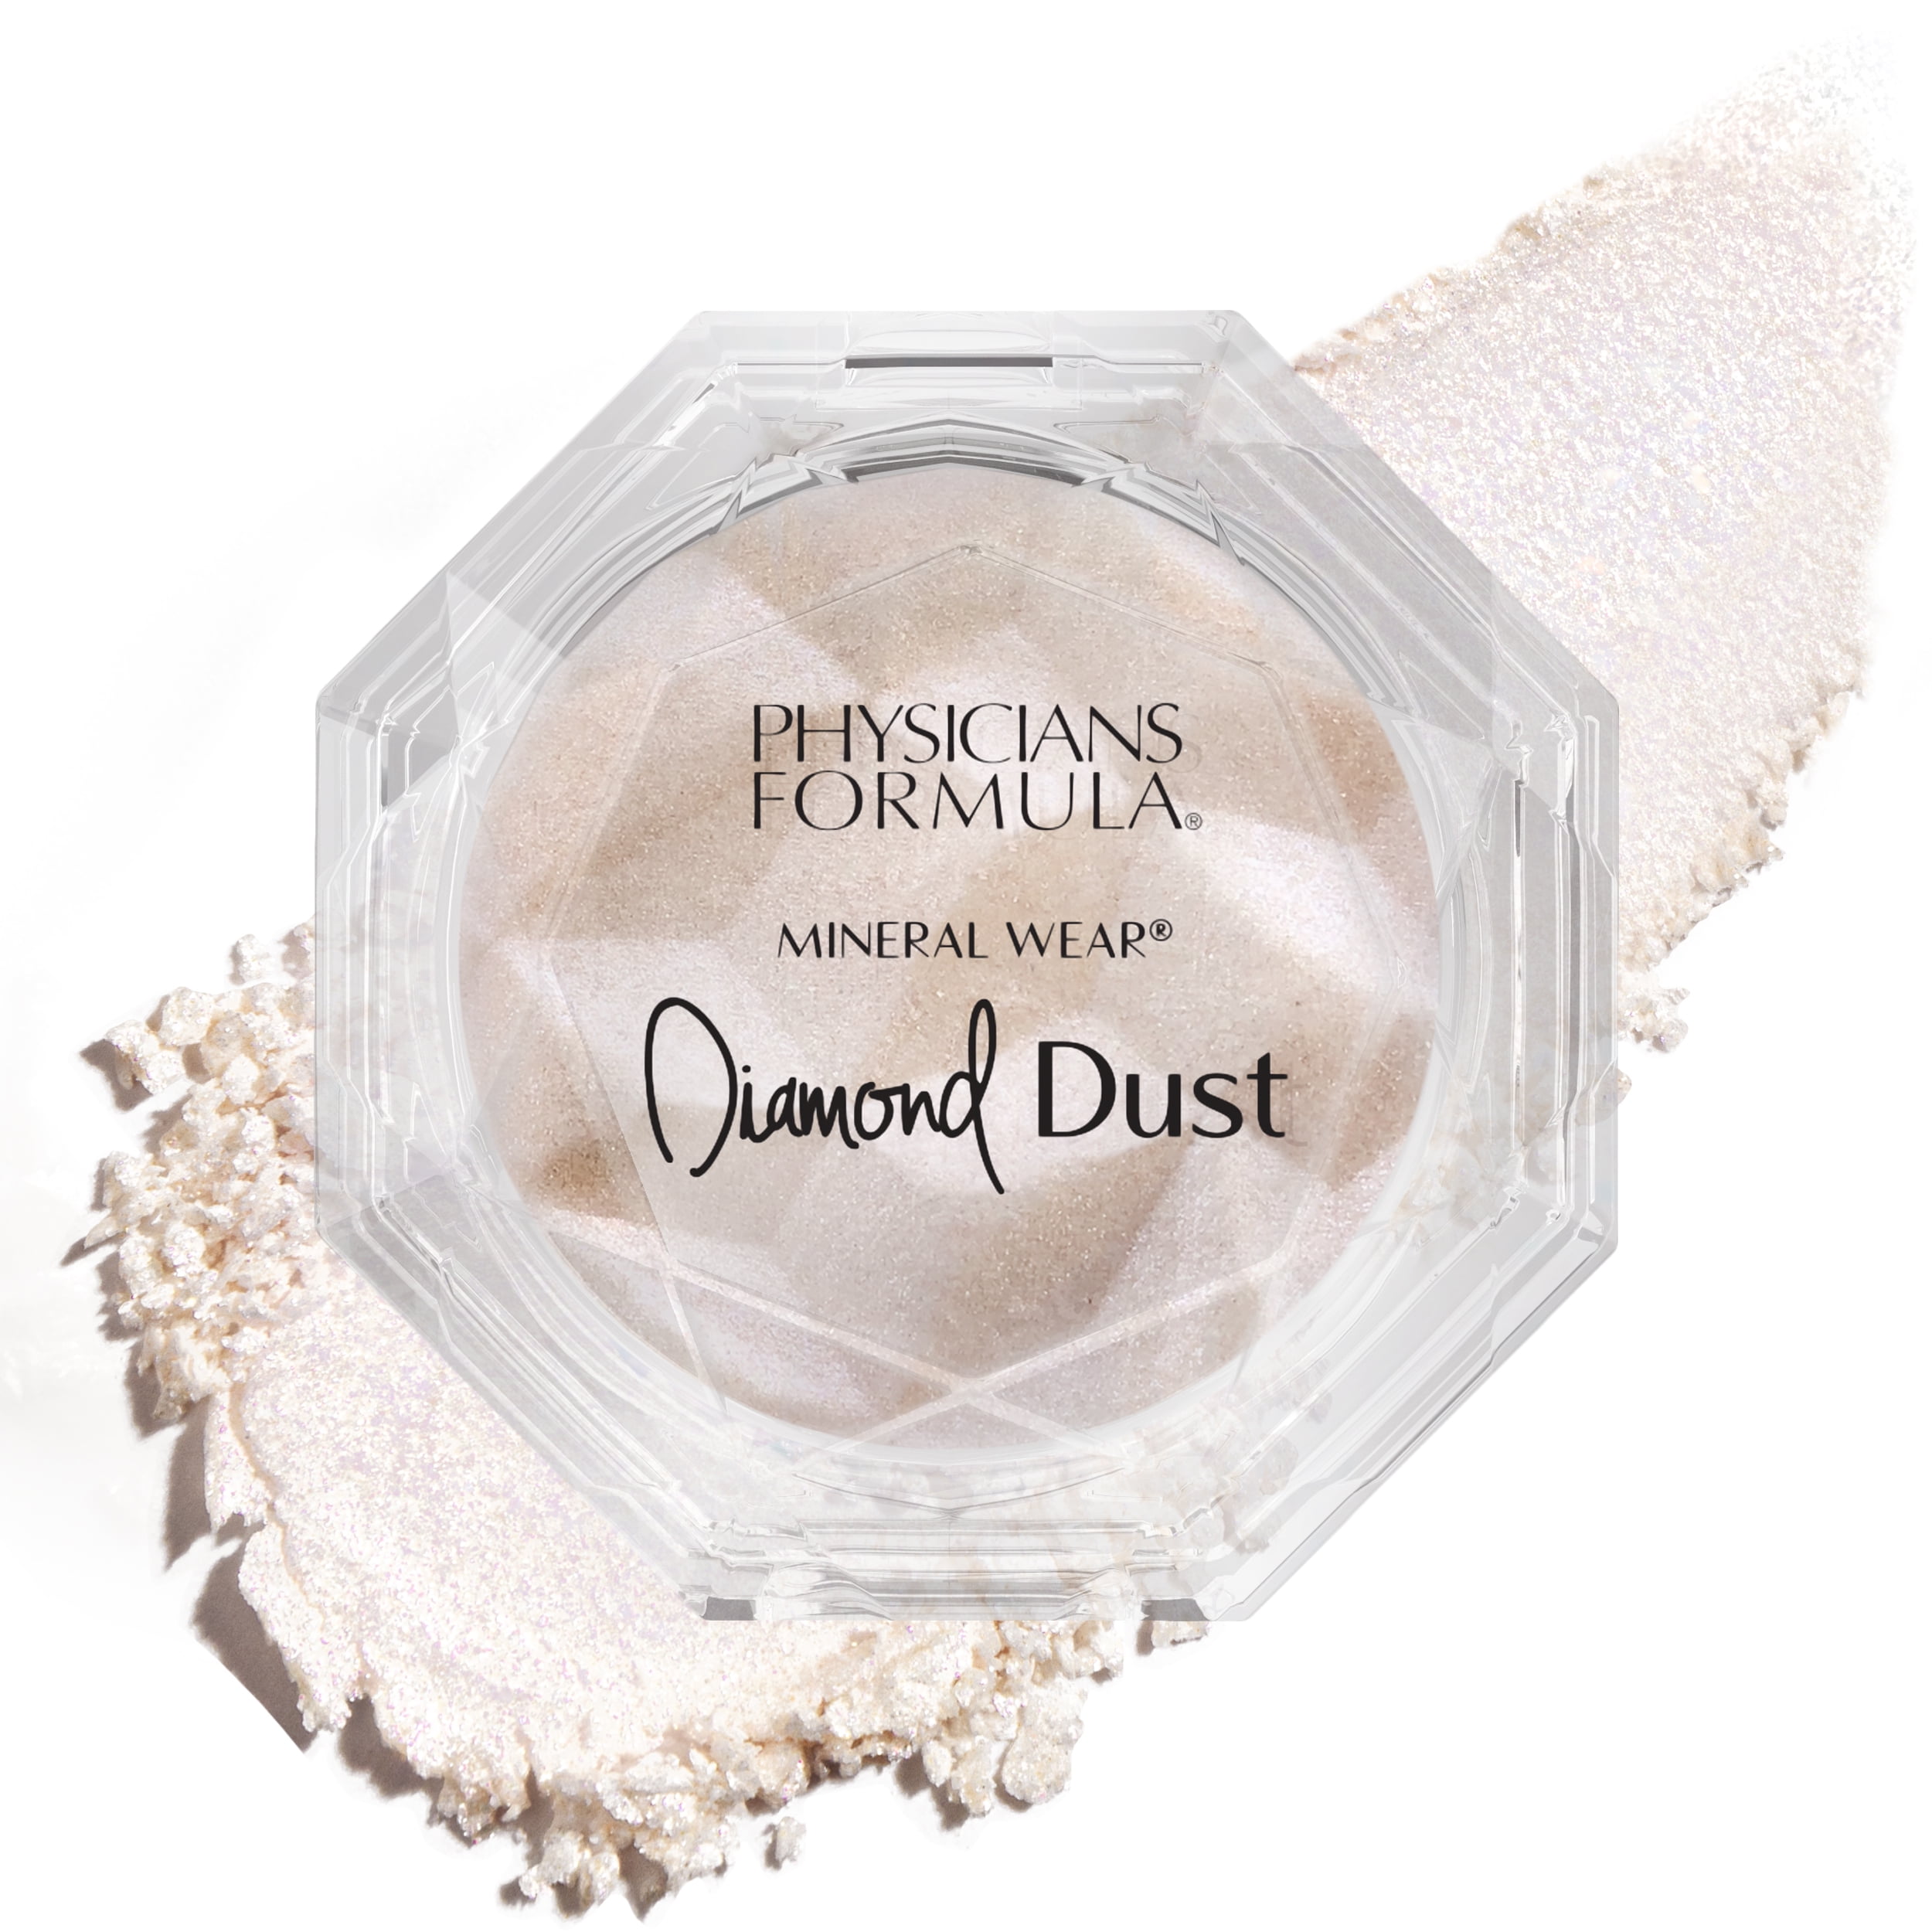  Diamond Dust